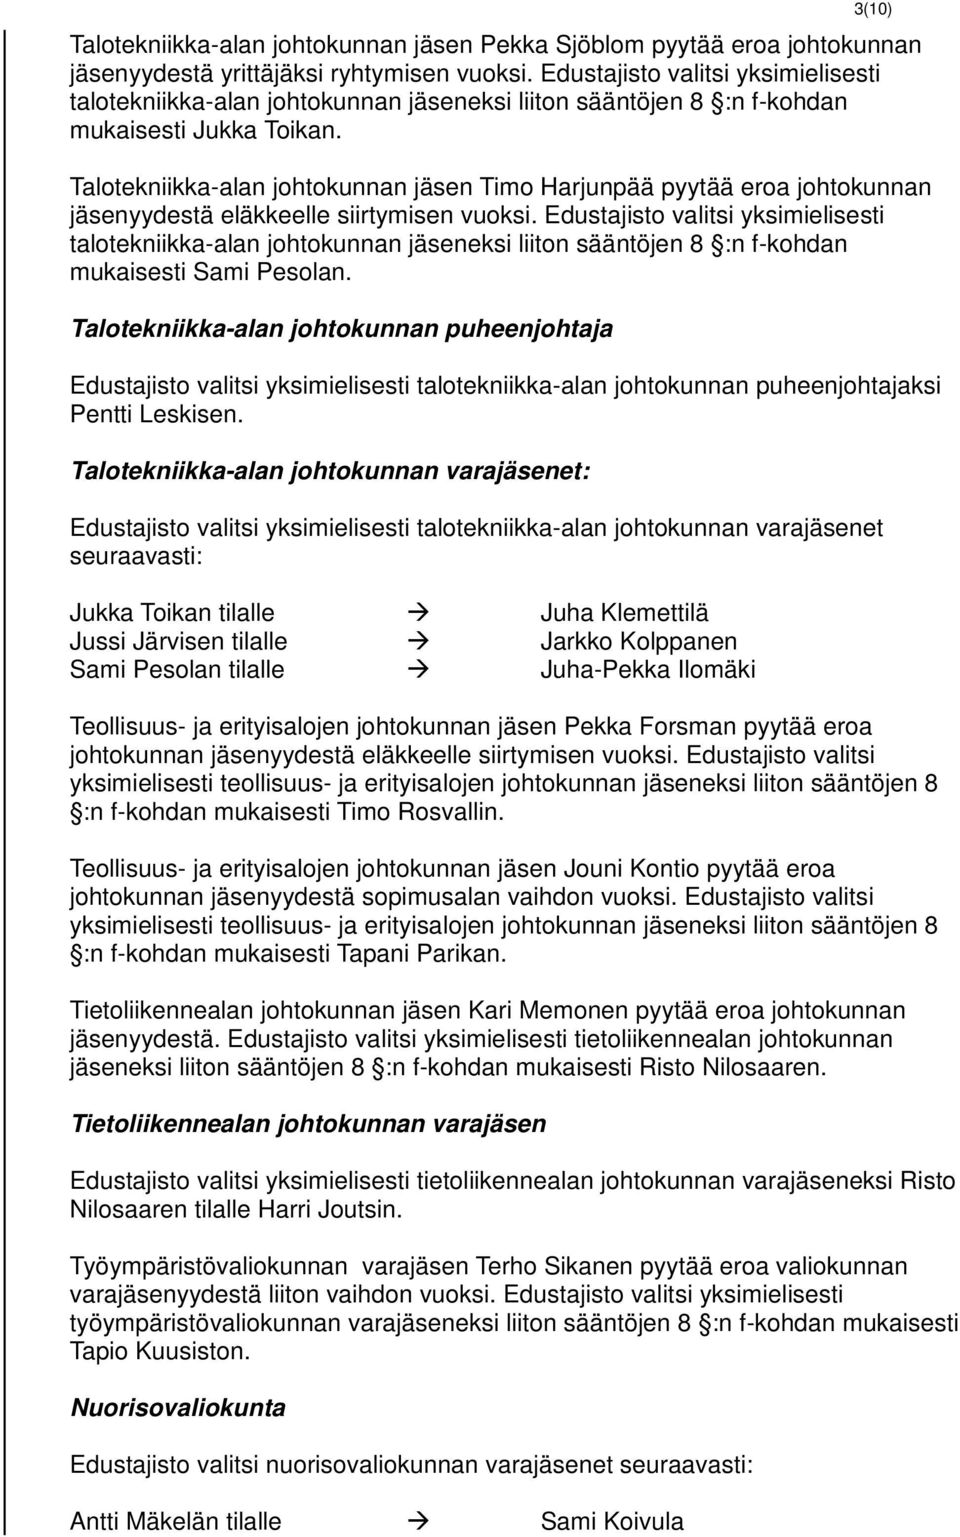 Talotekniikka-alan johtokunnan jäsen Timo Harjunpää pyytää eroa johtokunnan jäsenyydestä eläkkeelle siirtymisen vuoksi.